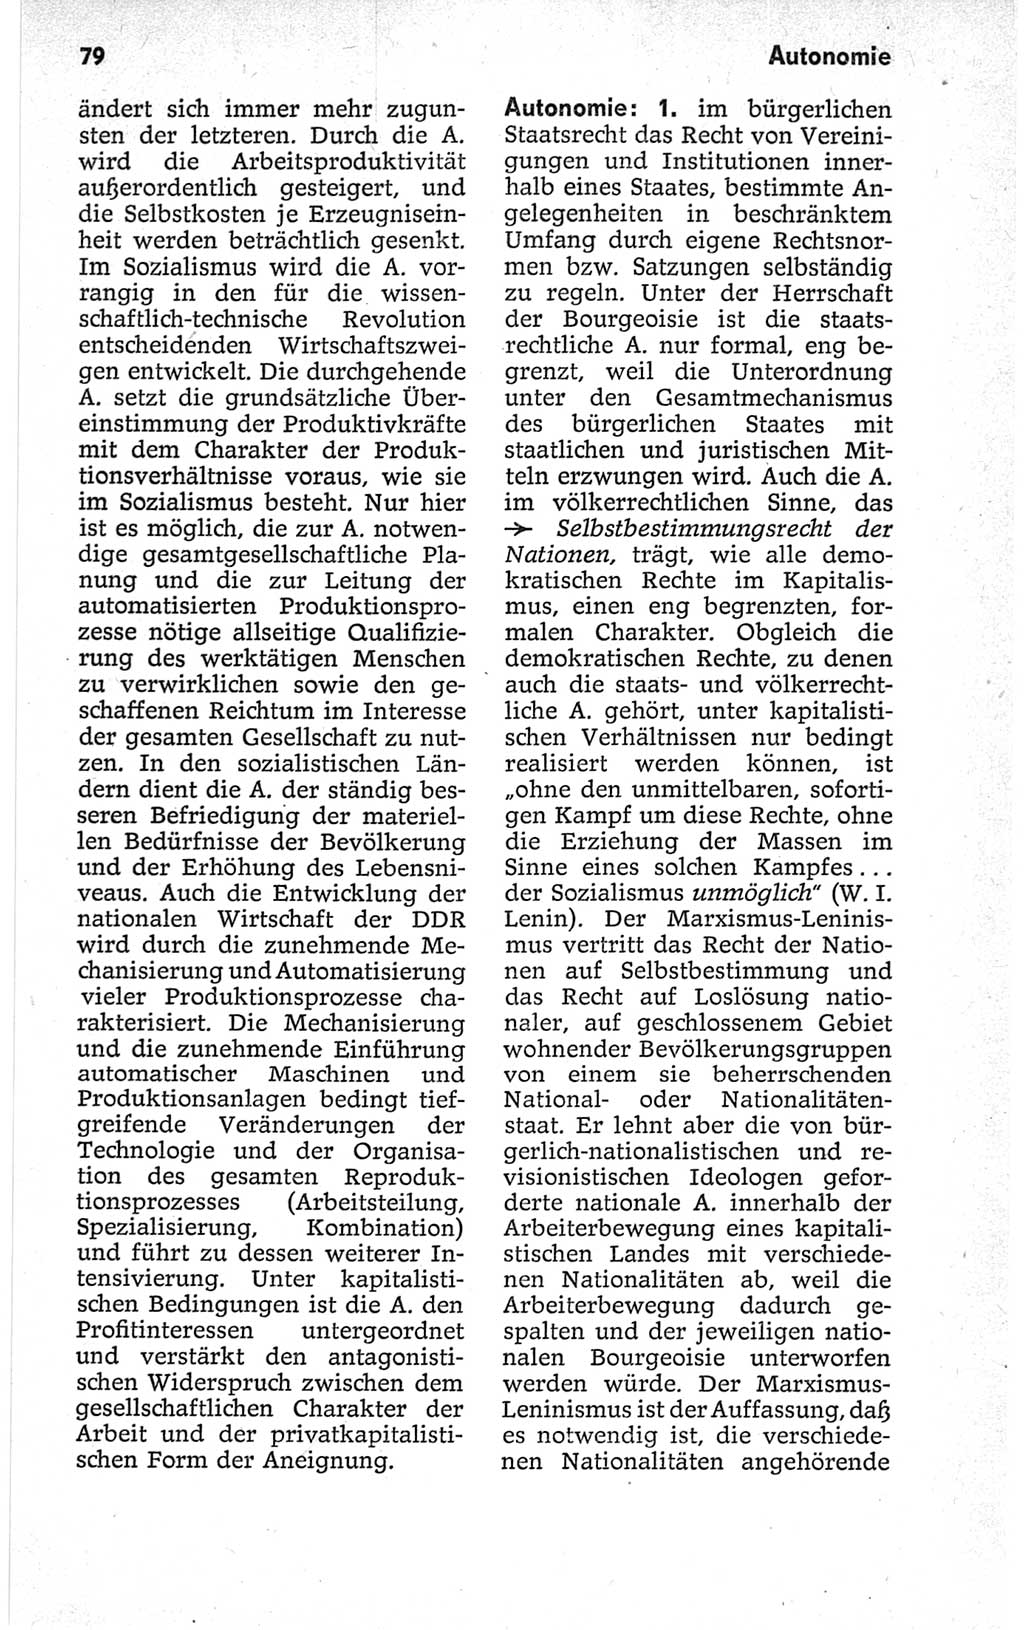 Kleines politisches Wörterbuch [Deutsche Demokratische Republik (DDR)] 1967, Seite 79 (Kl. pol. Wb. DDR 1967, S. 79)